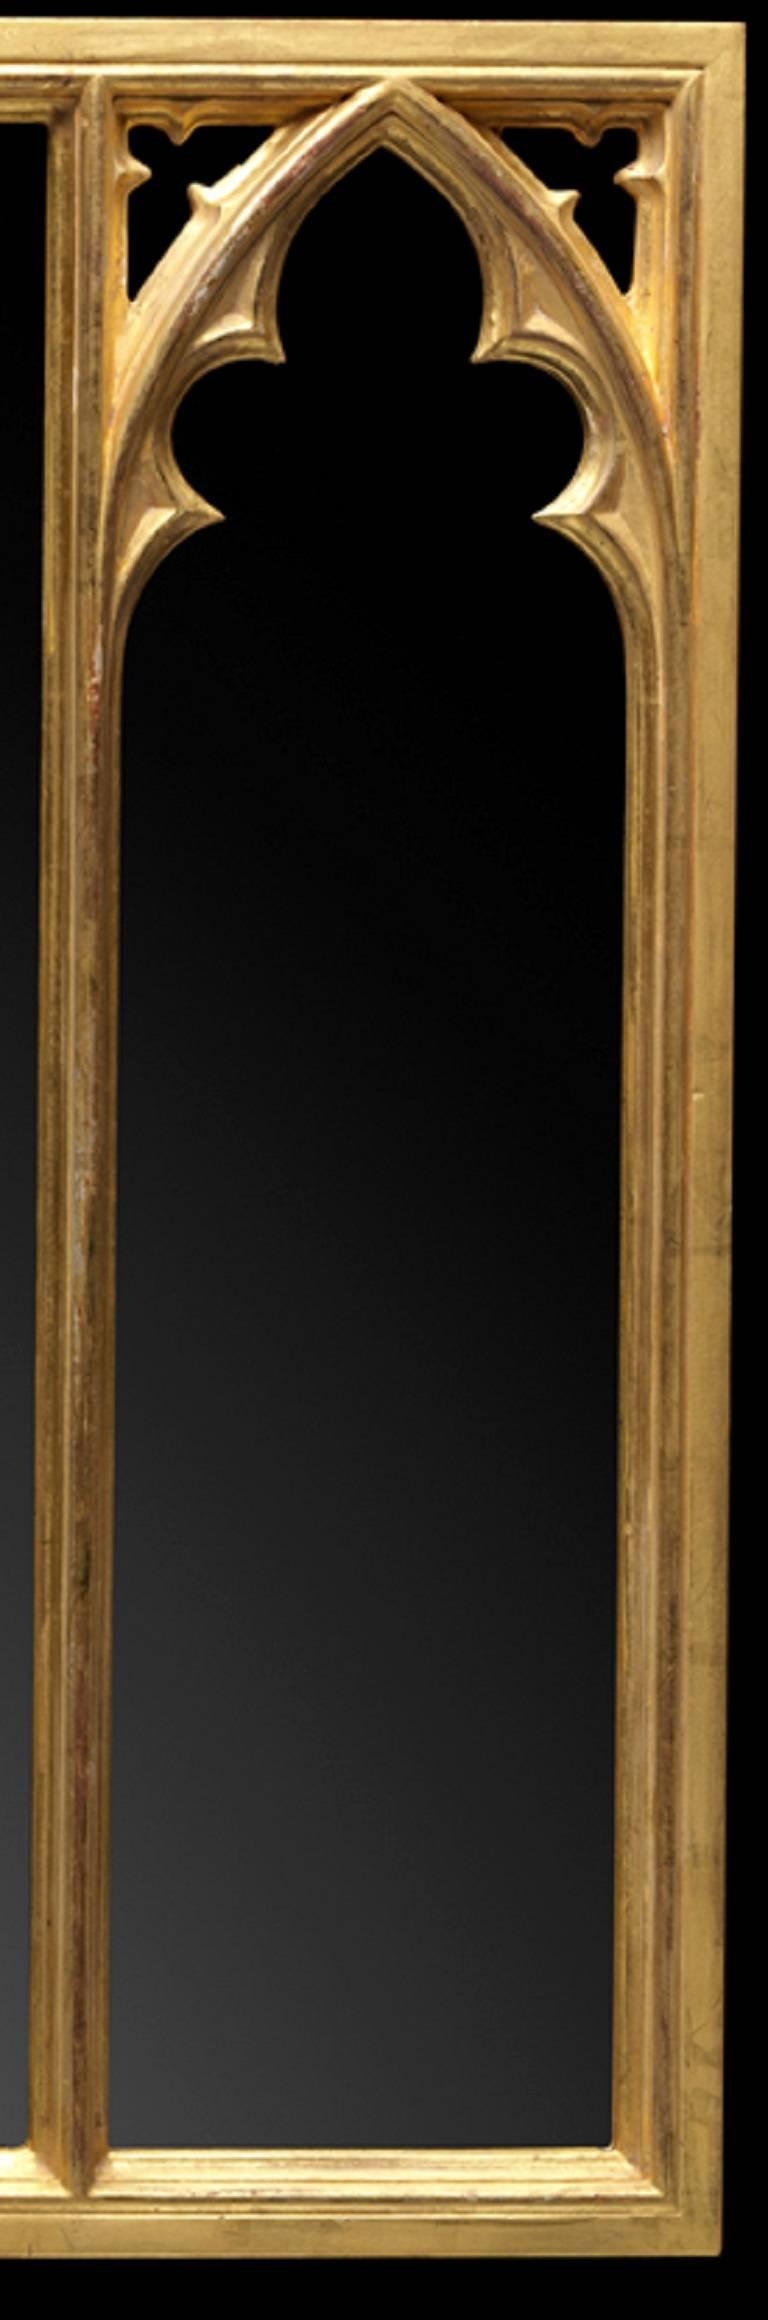 Miroir trumeau rectangulaire en bois doré sculpté, de style gothique à trois plaques, inspiré du style et de la décoration de la Long Gallery de Strawberry Hill.

Nous travaillons actuellement avec un délai d'exécution de 30 à 36 semaines.